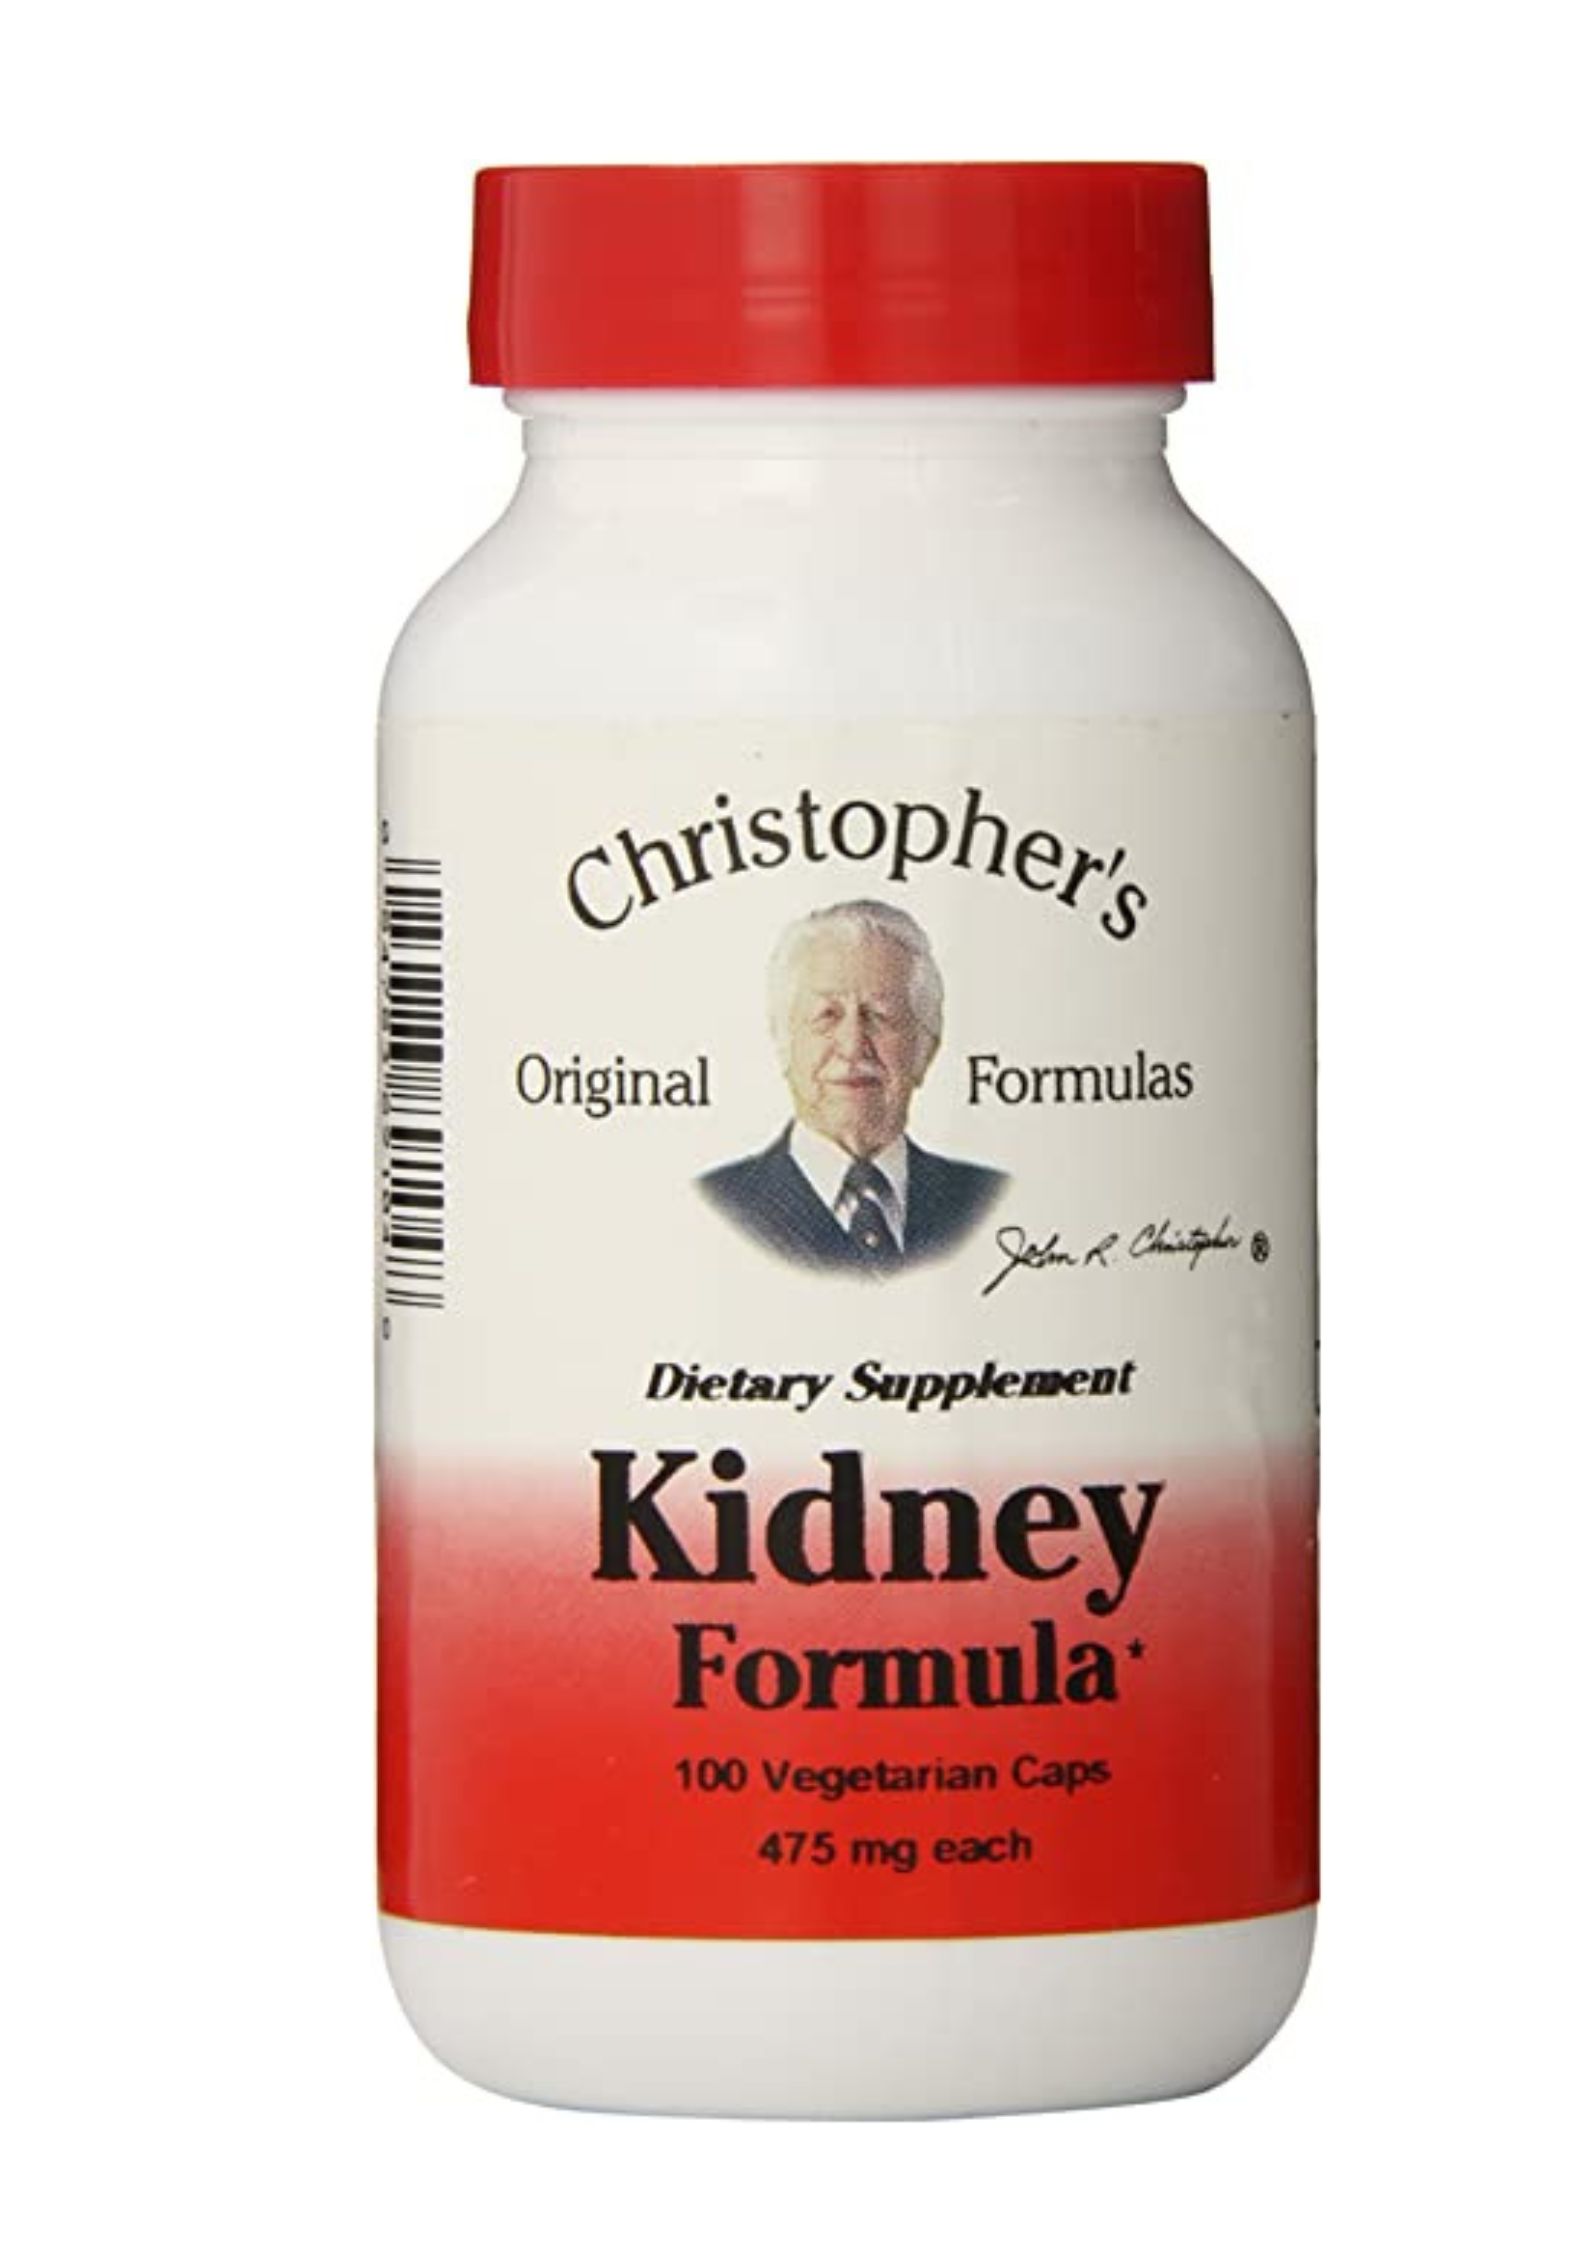 Dr. Christopher s Original Formulas Kidney Formula 475mg